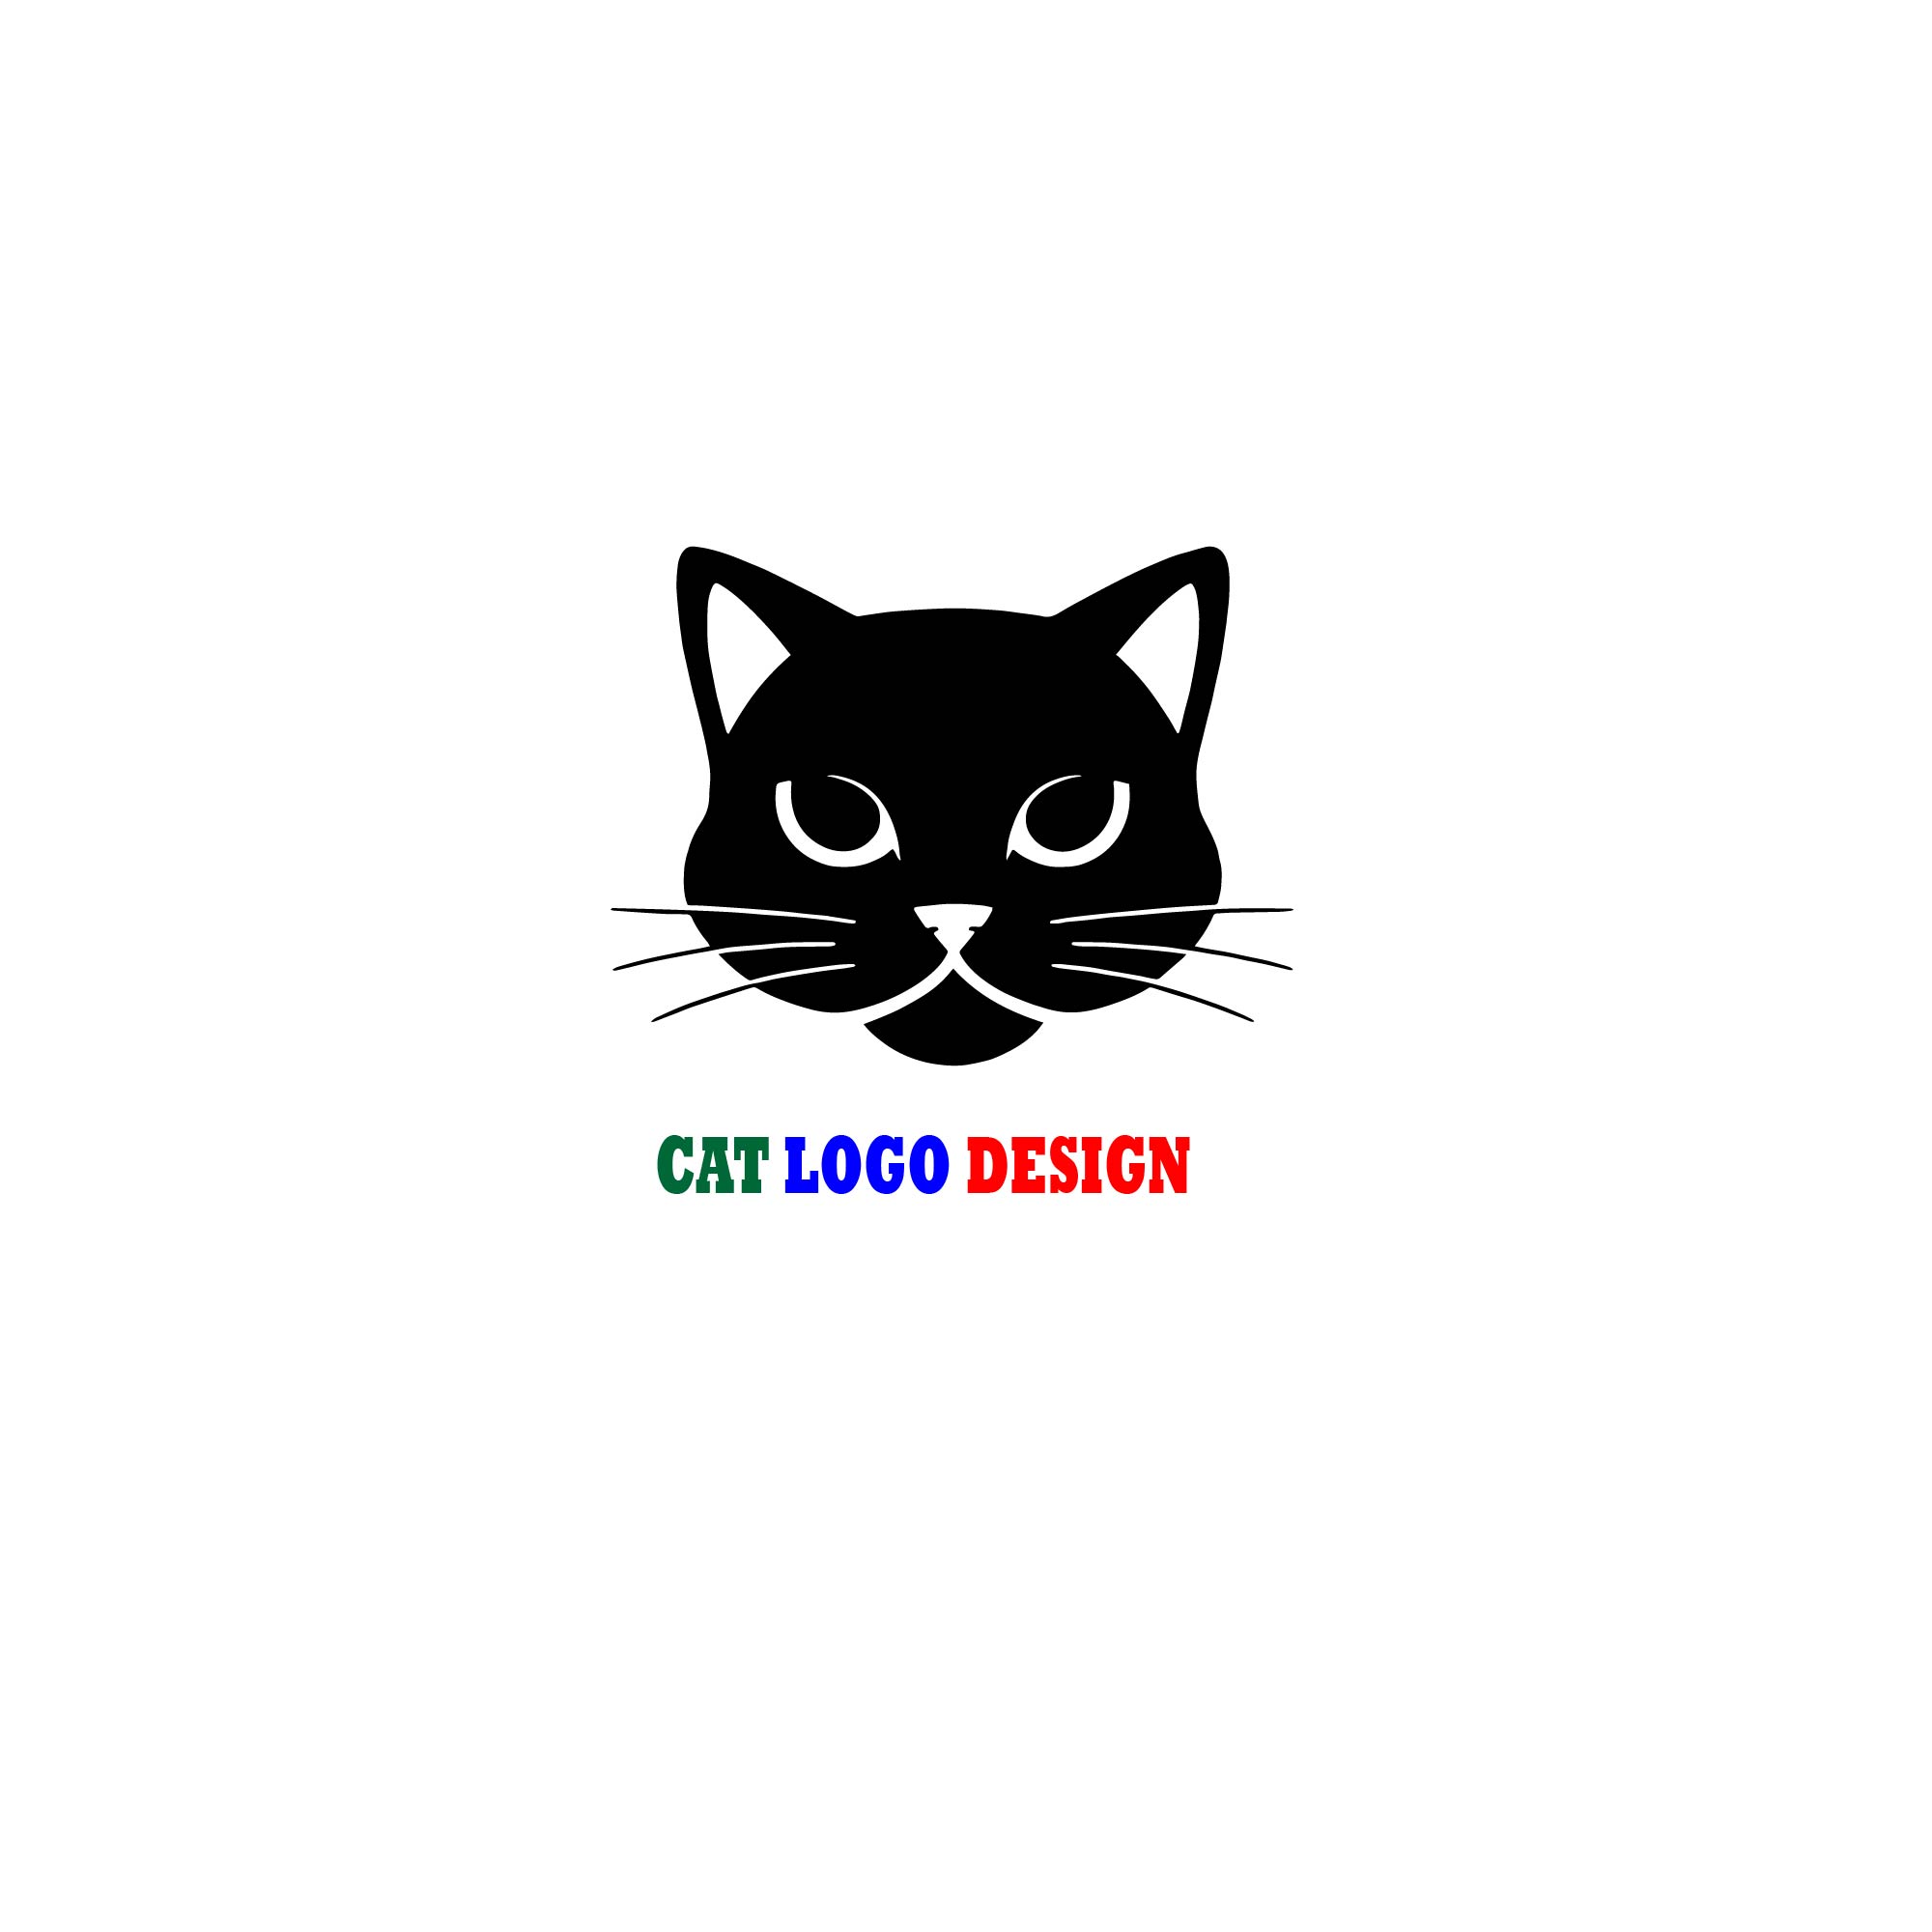 cat logo design 05 01 799